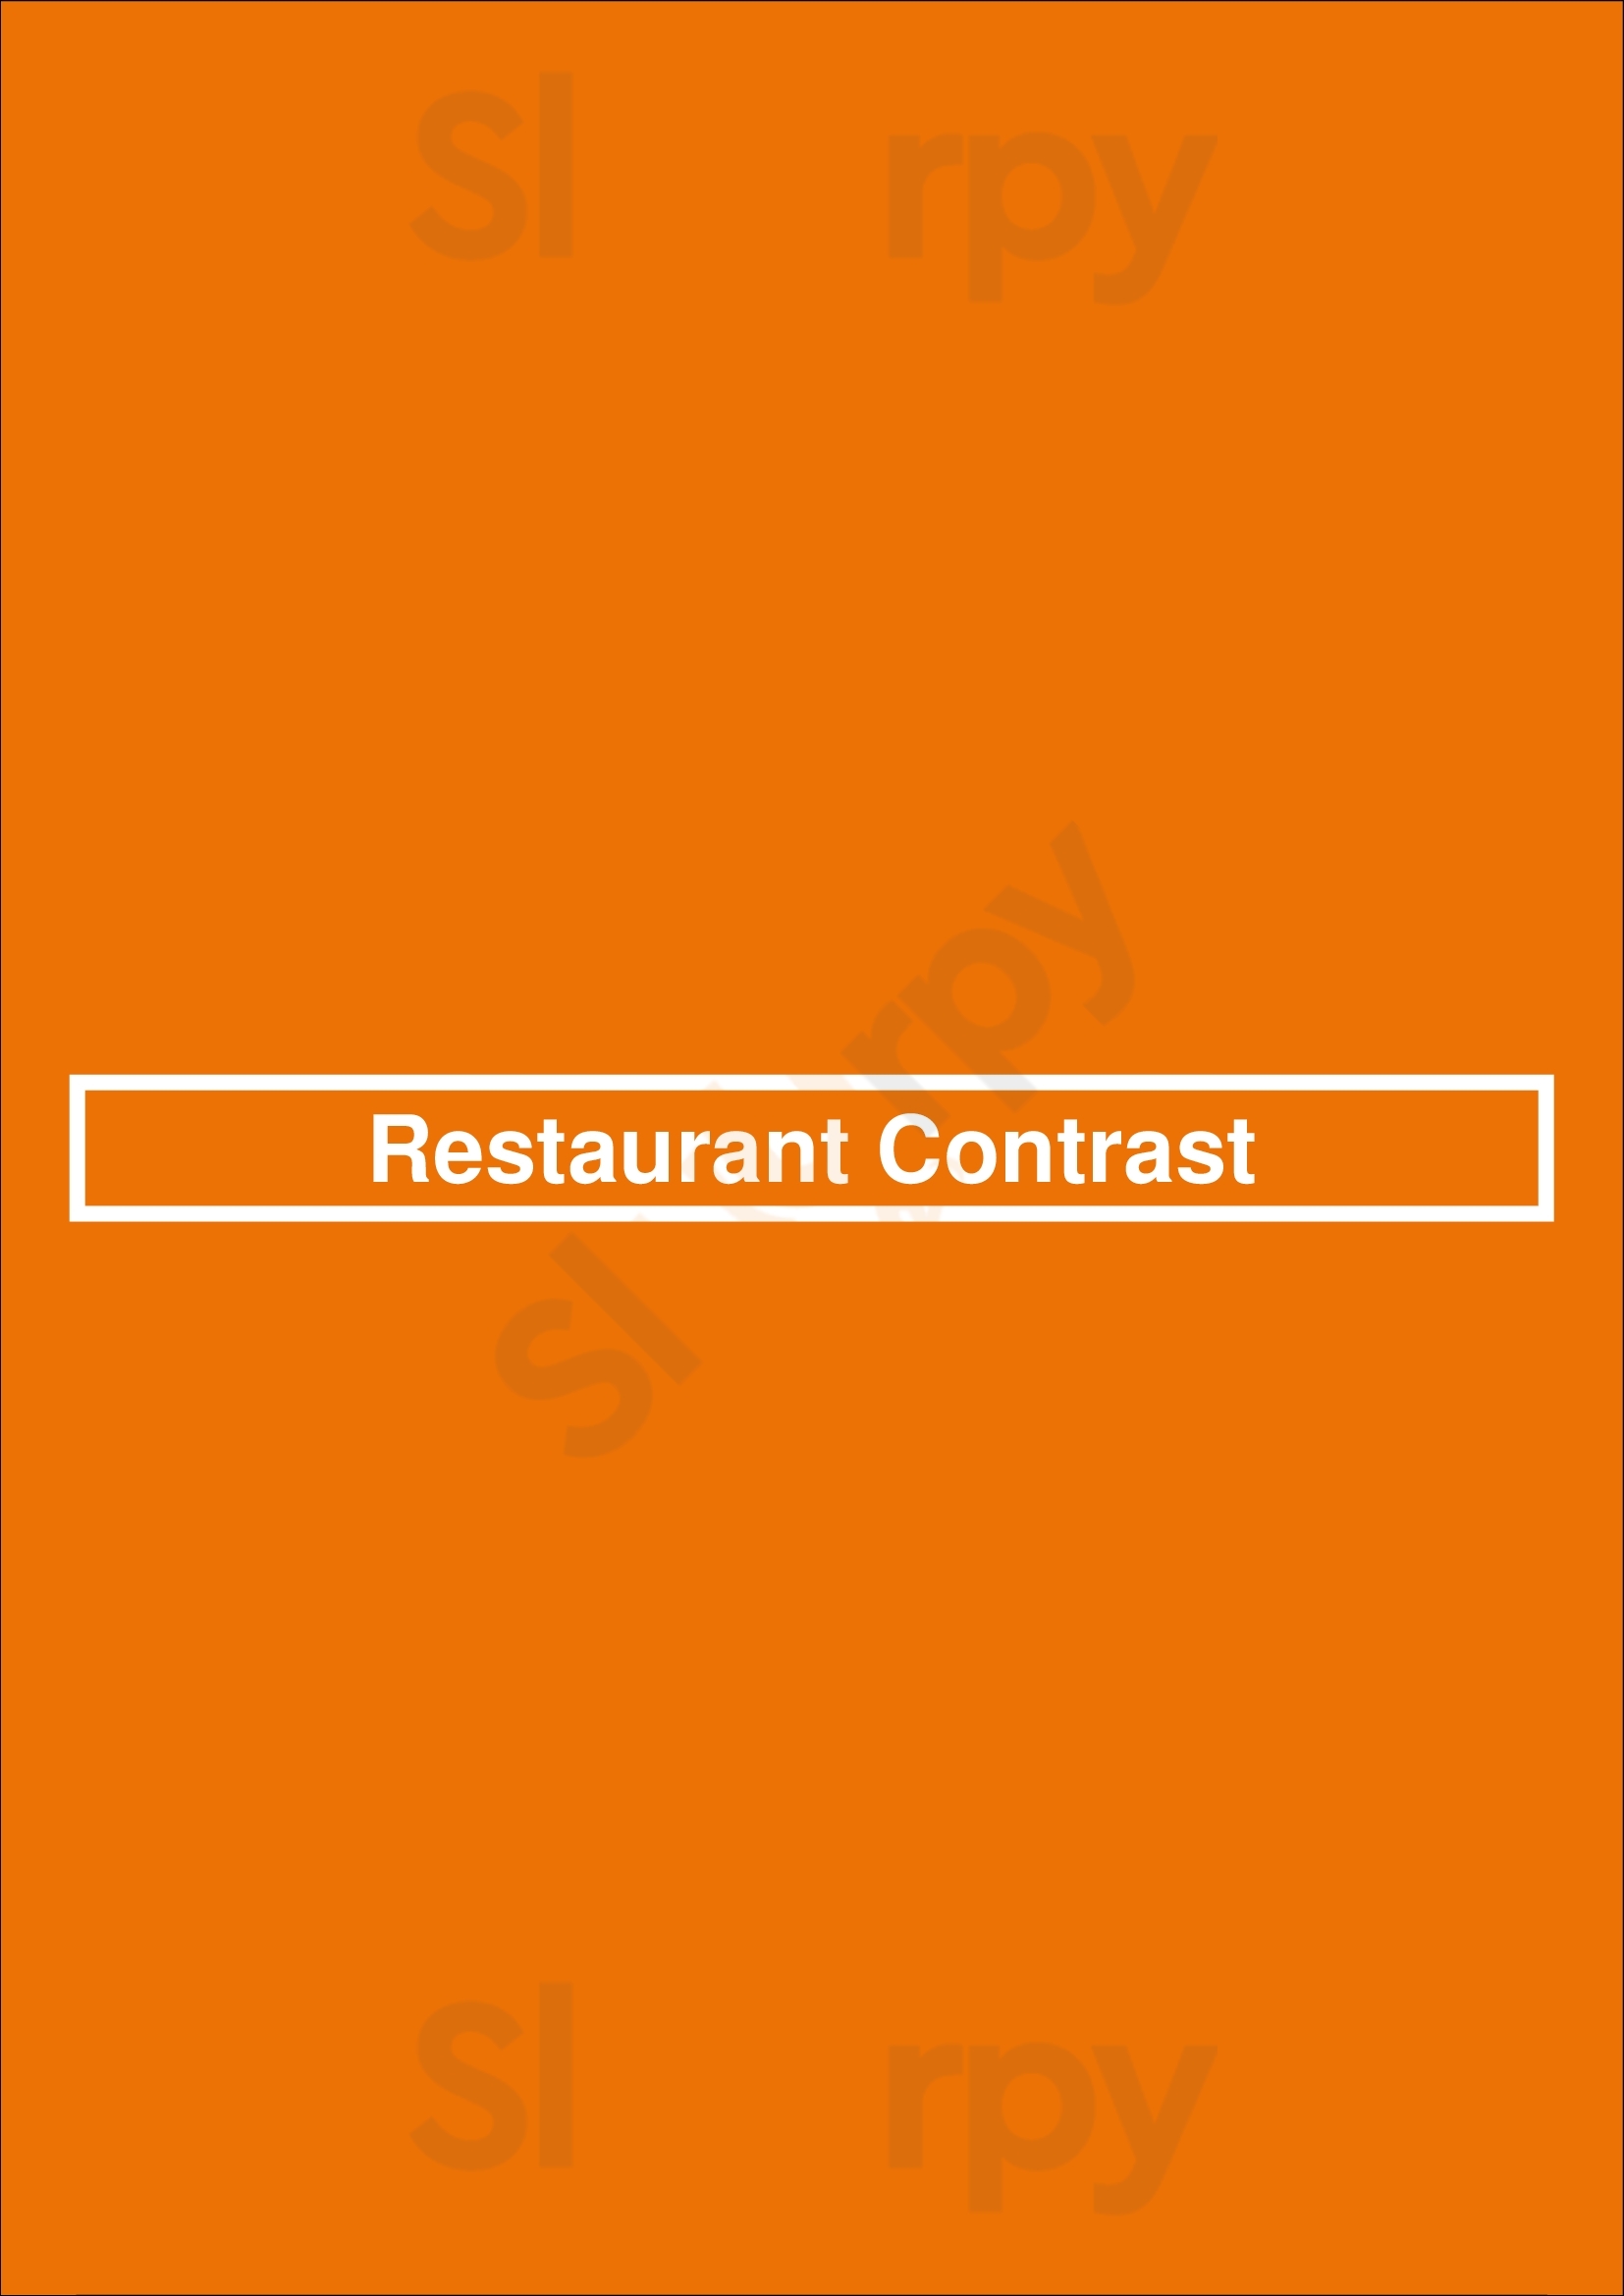 Restaurant Contrast Lanaken Menu - 1